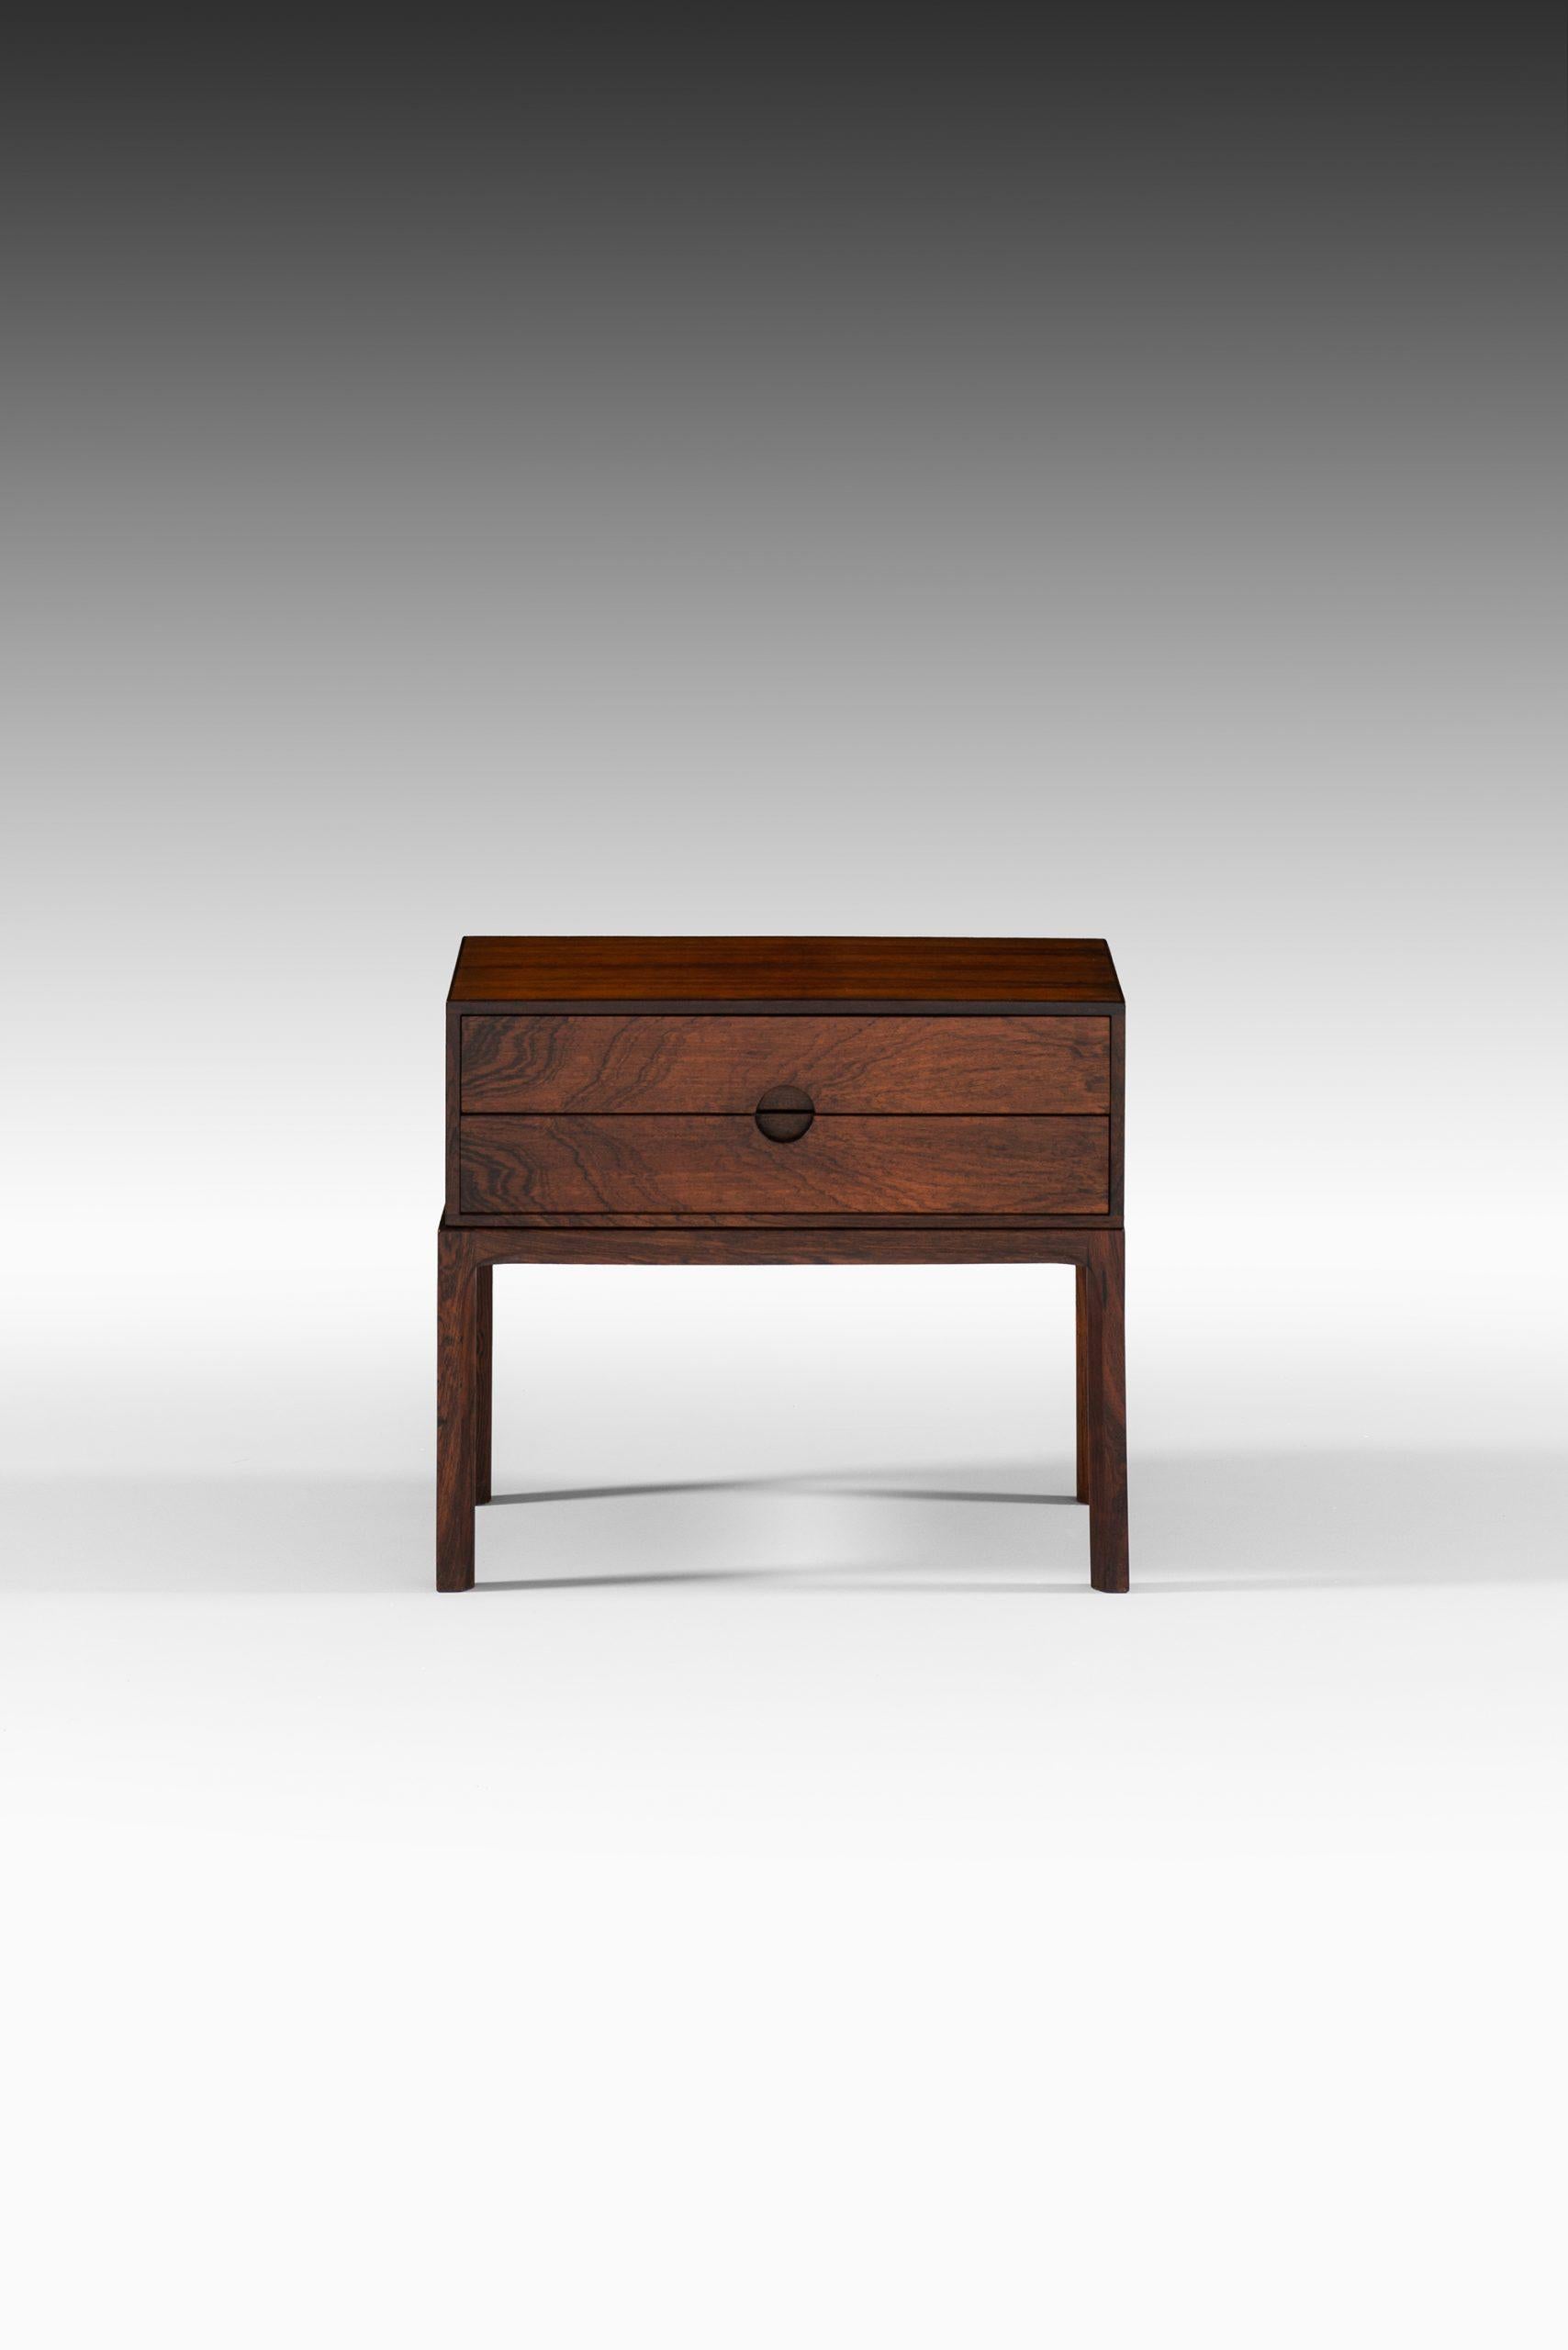 Bureau / side table model 384 designed by Kai Kristiansen. Produced by Aksel Kjersgaard in Denmark.